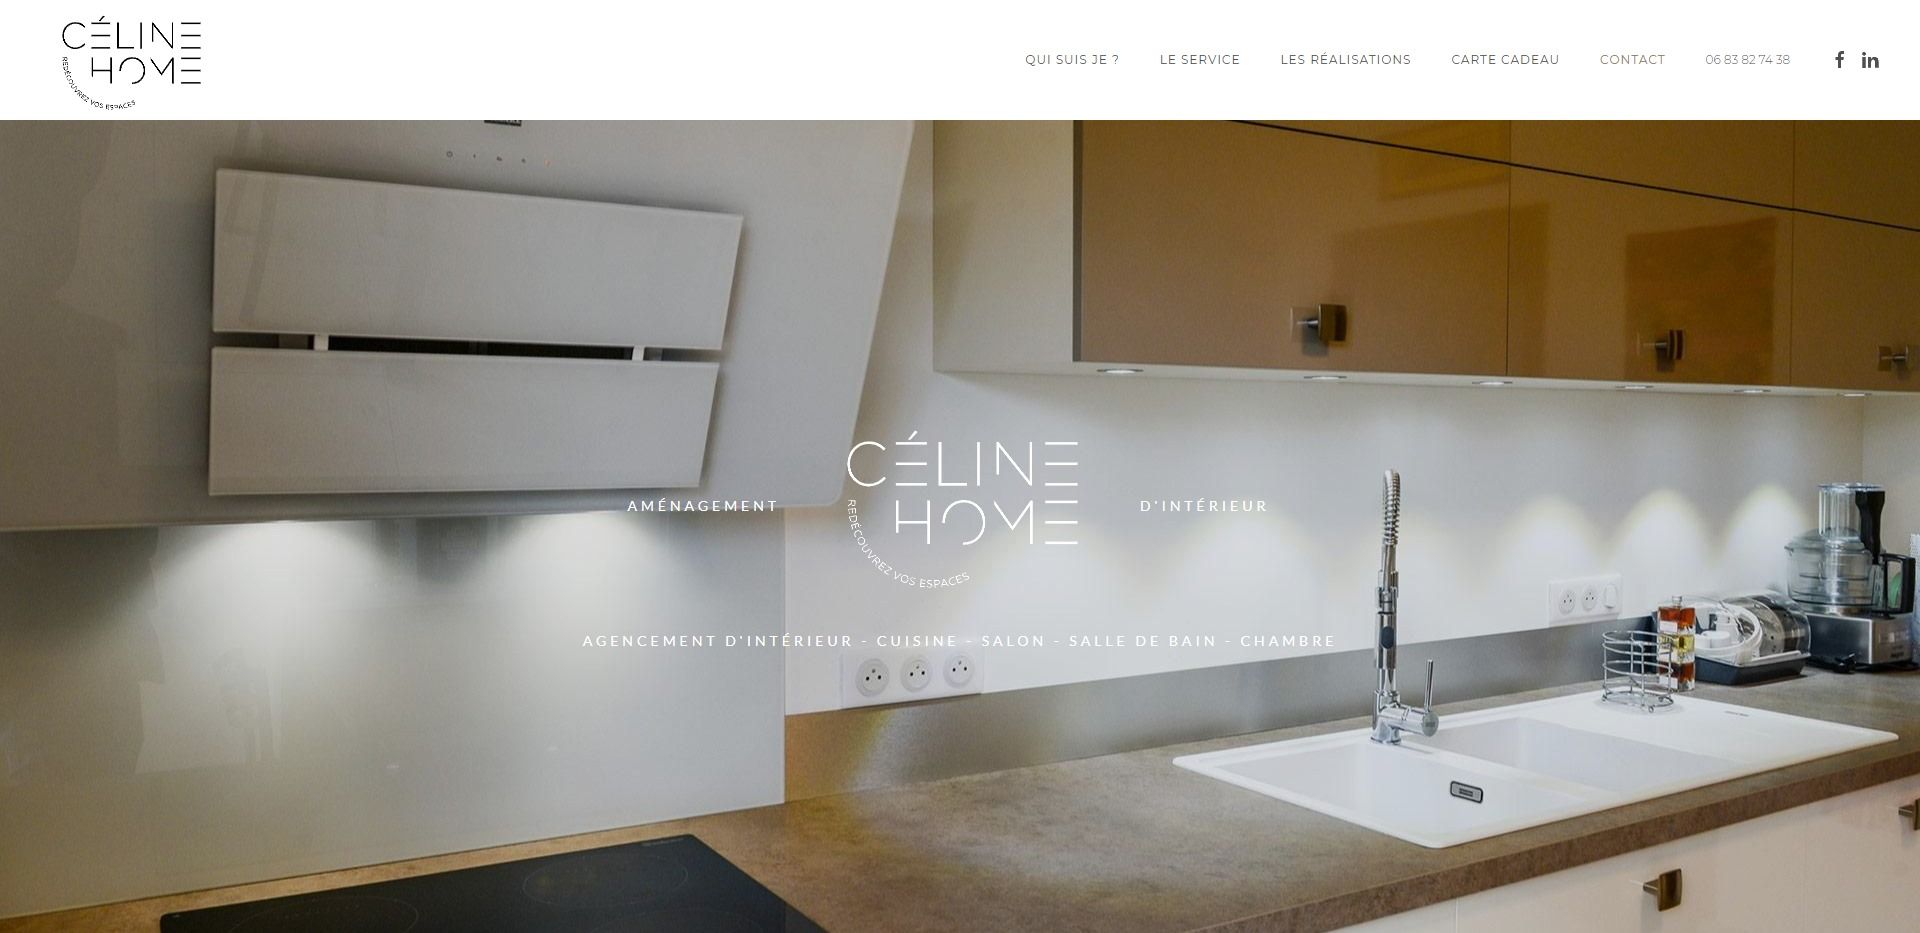 Image site Céline Home